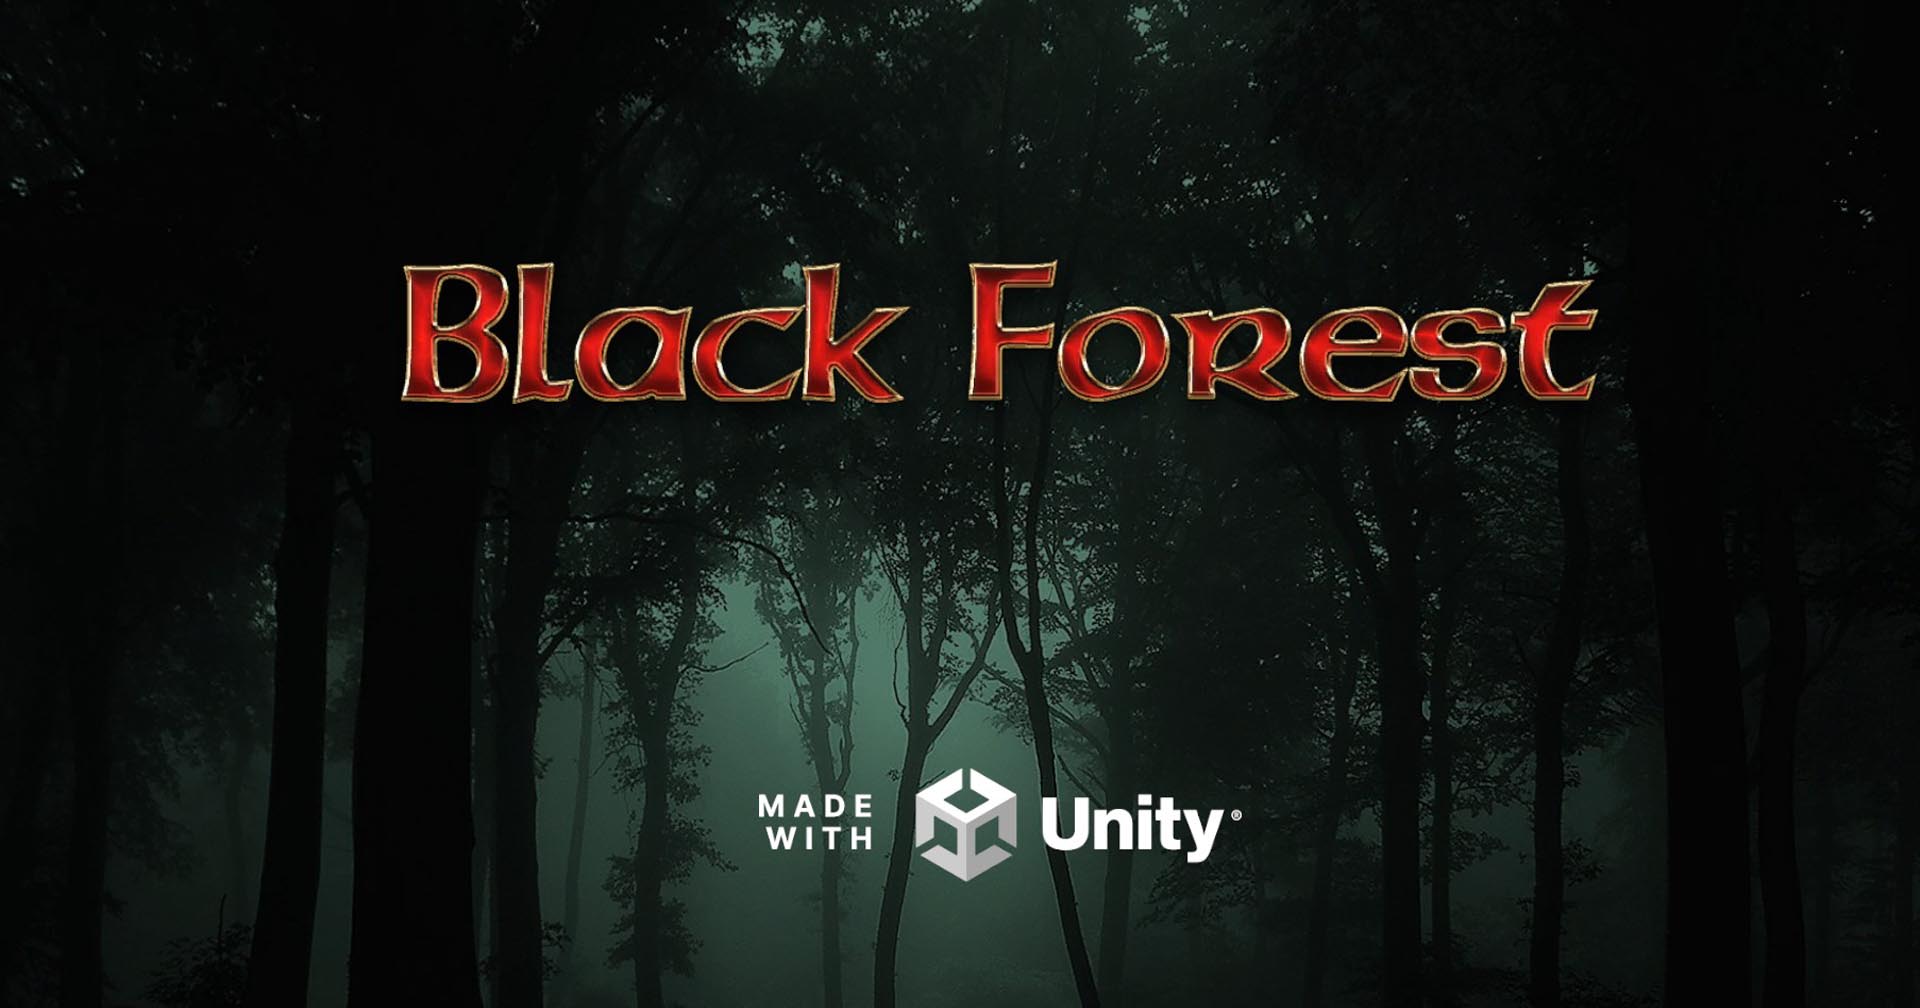 [รีวิวเกม] Black Forest สร้างเมือง บริหารทรัพยากร เอาตัวรอดจากภัยร้ายกลางป่าลึก